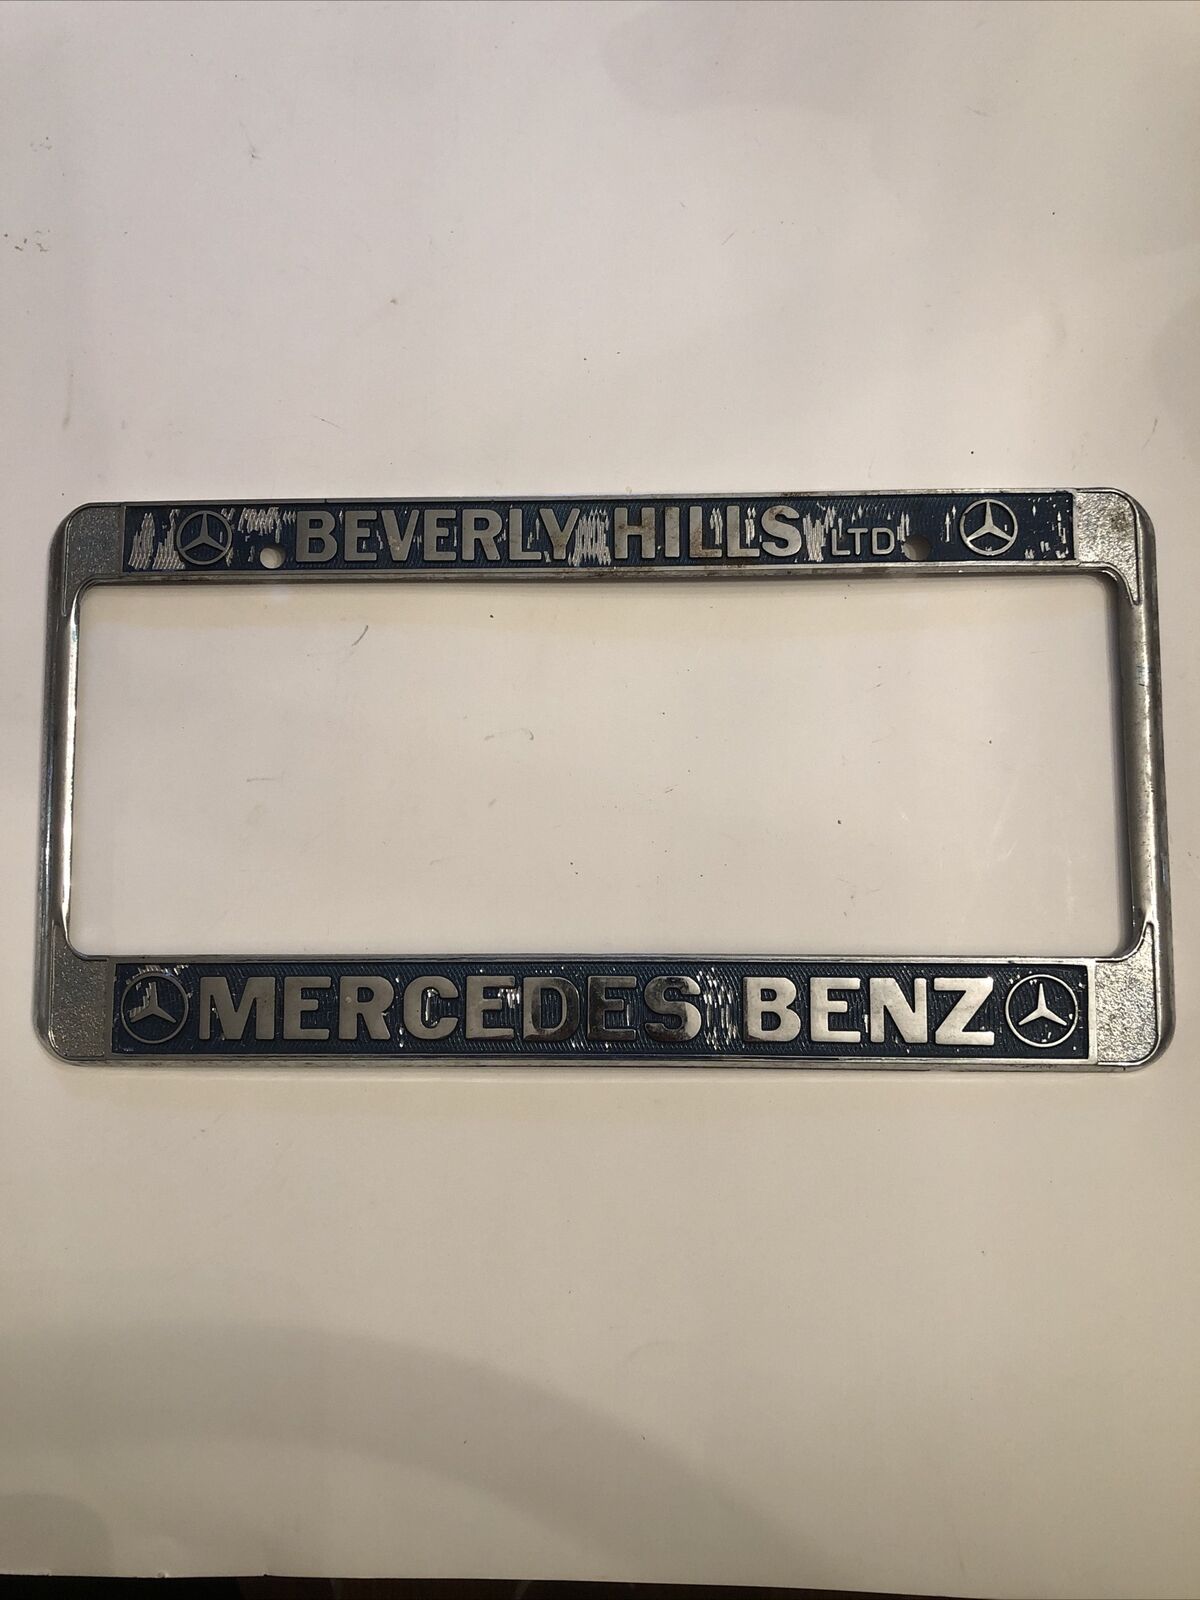 Mercedes-Benz Beverly Hills Ltd Vintage Metal License Plate Frame